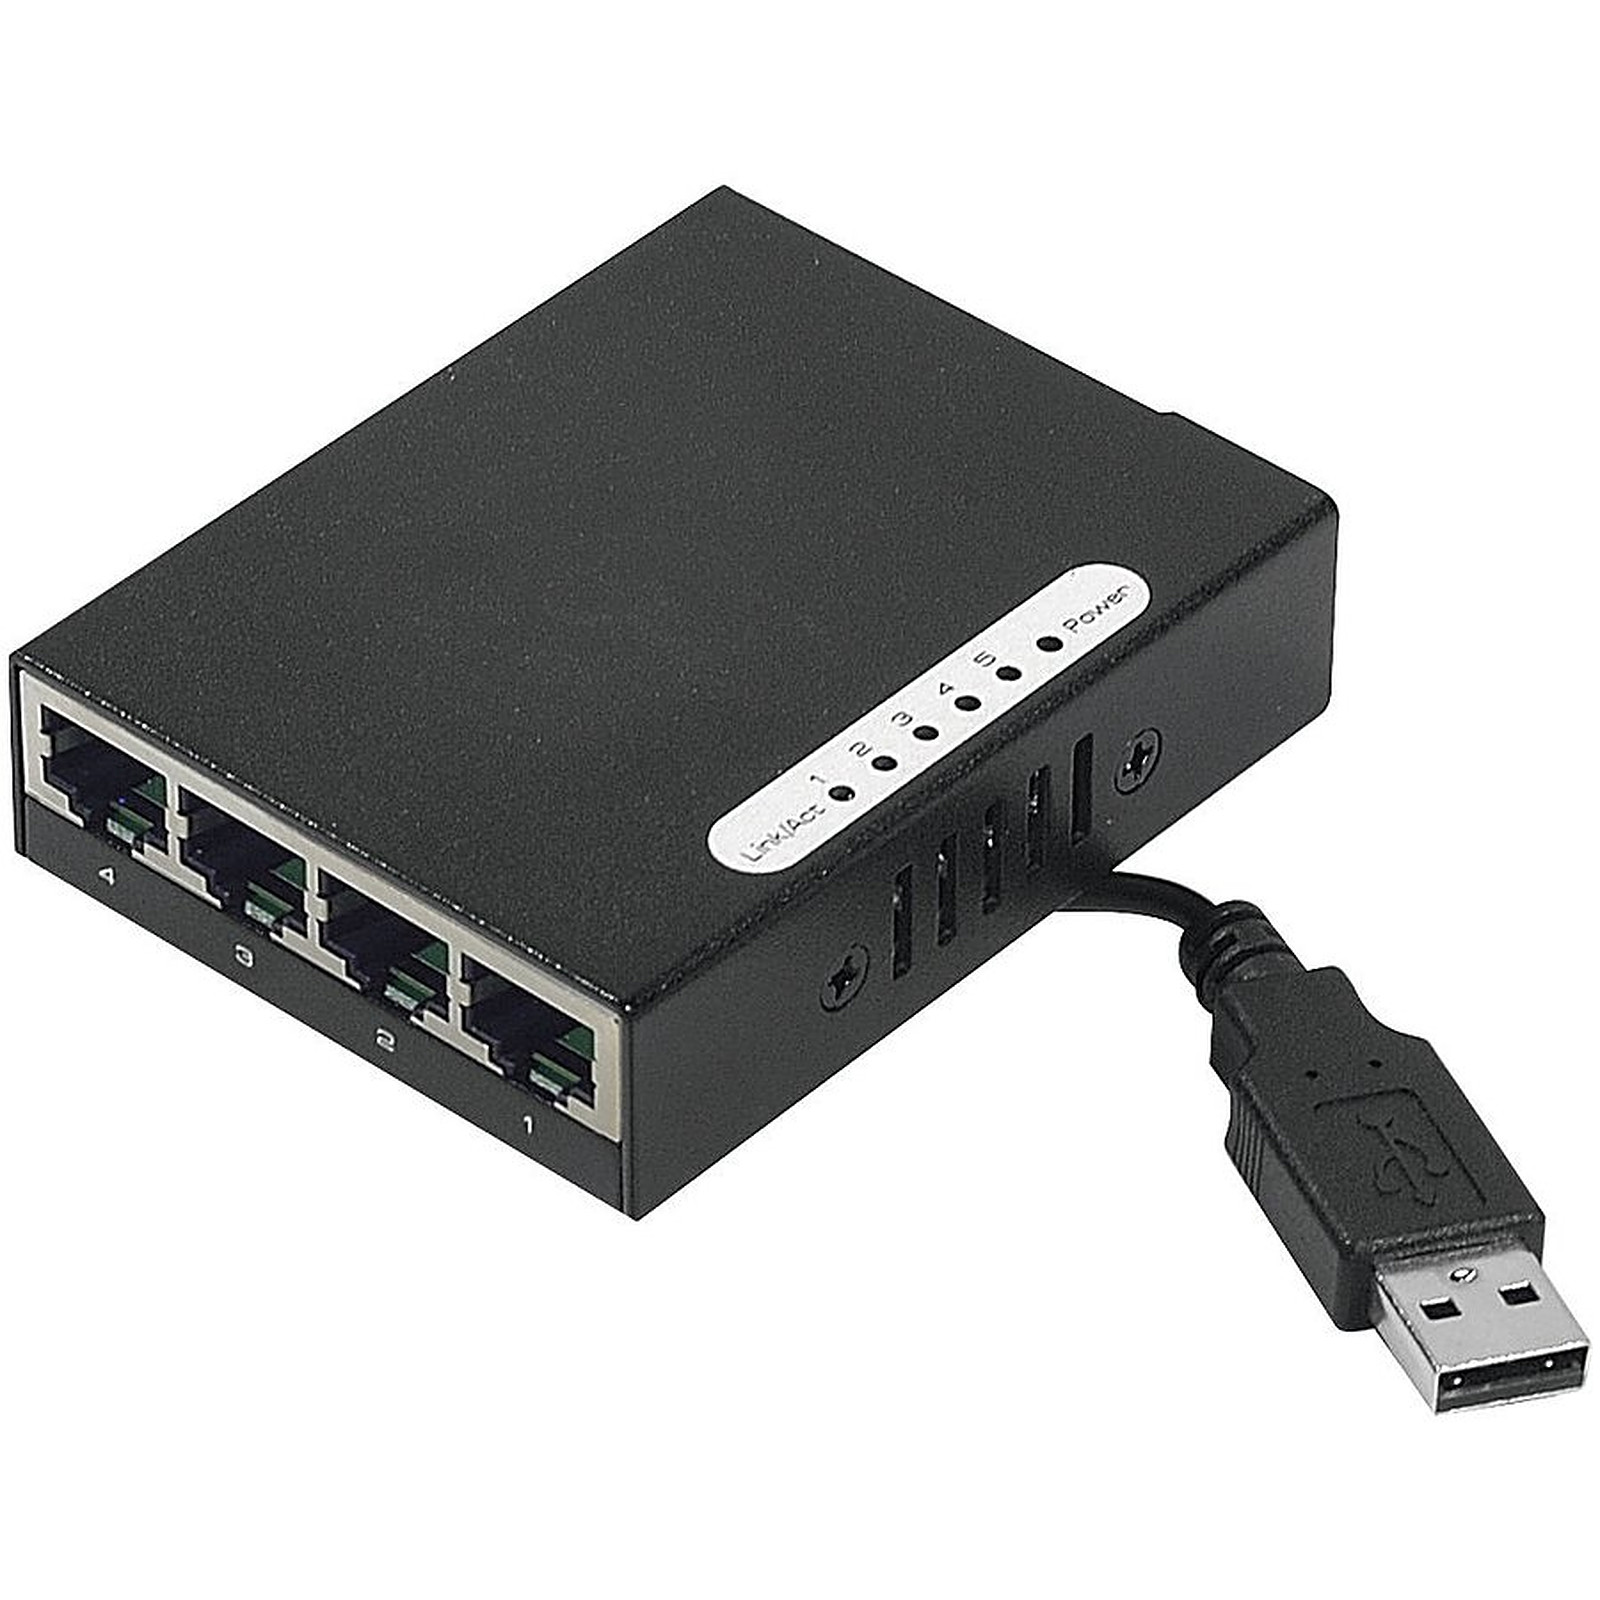 Mini switch auto-alimente par USB (4 ports Gigabit Ethernet) - Switch Generique